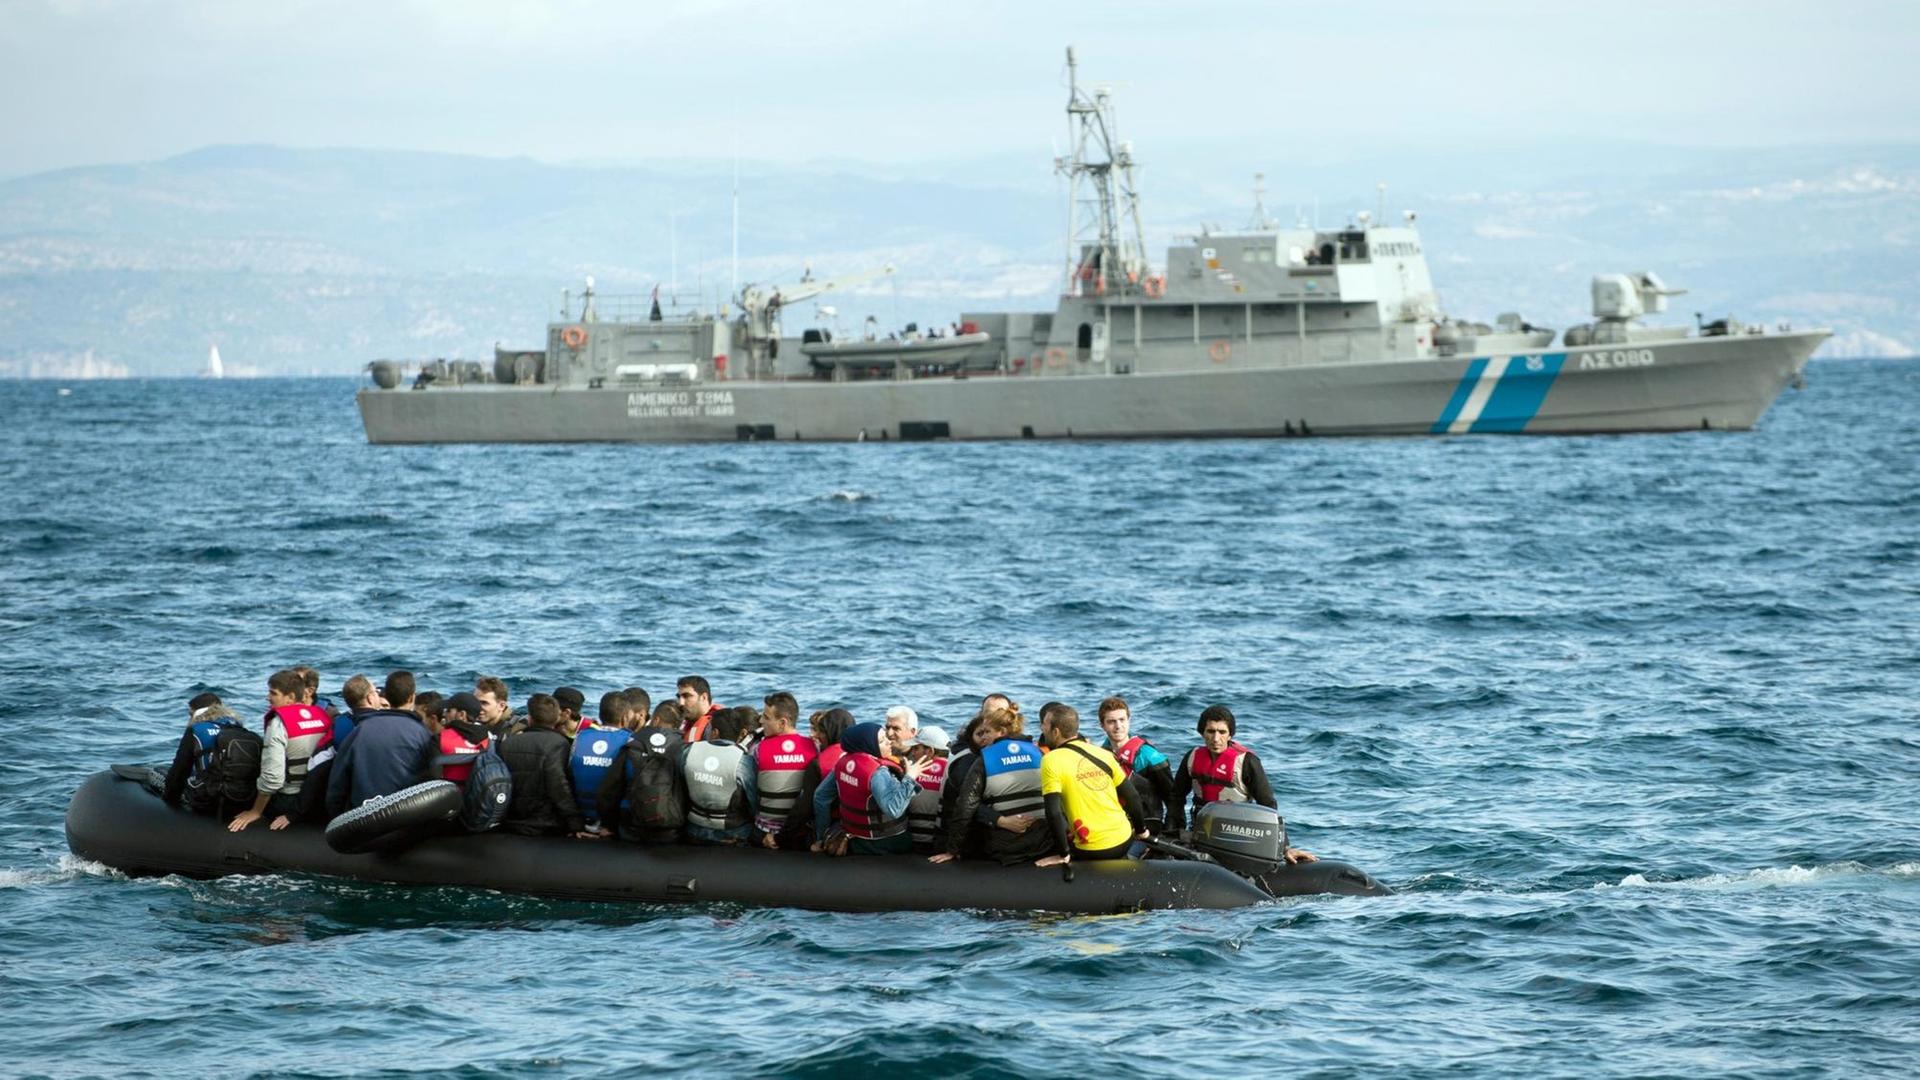 Flüchtlinge fahren am 29.09.2015 mit einem Schlauchboot an einem Schiff der griechischen Küstenwache vorbei.